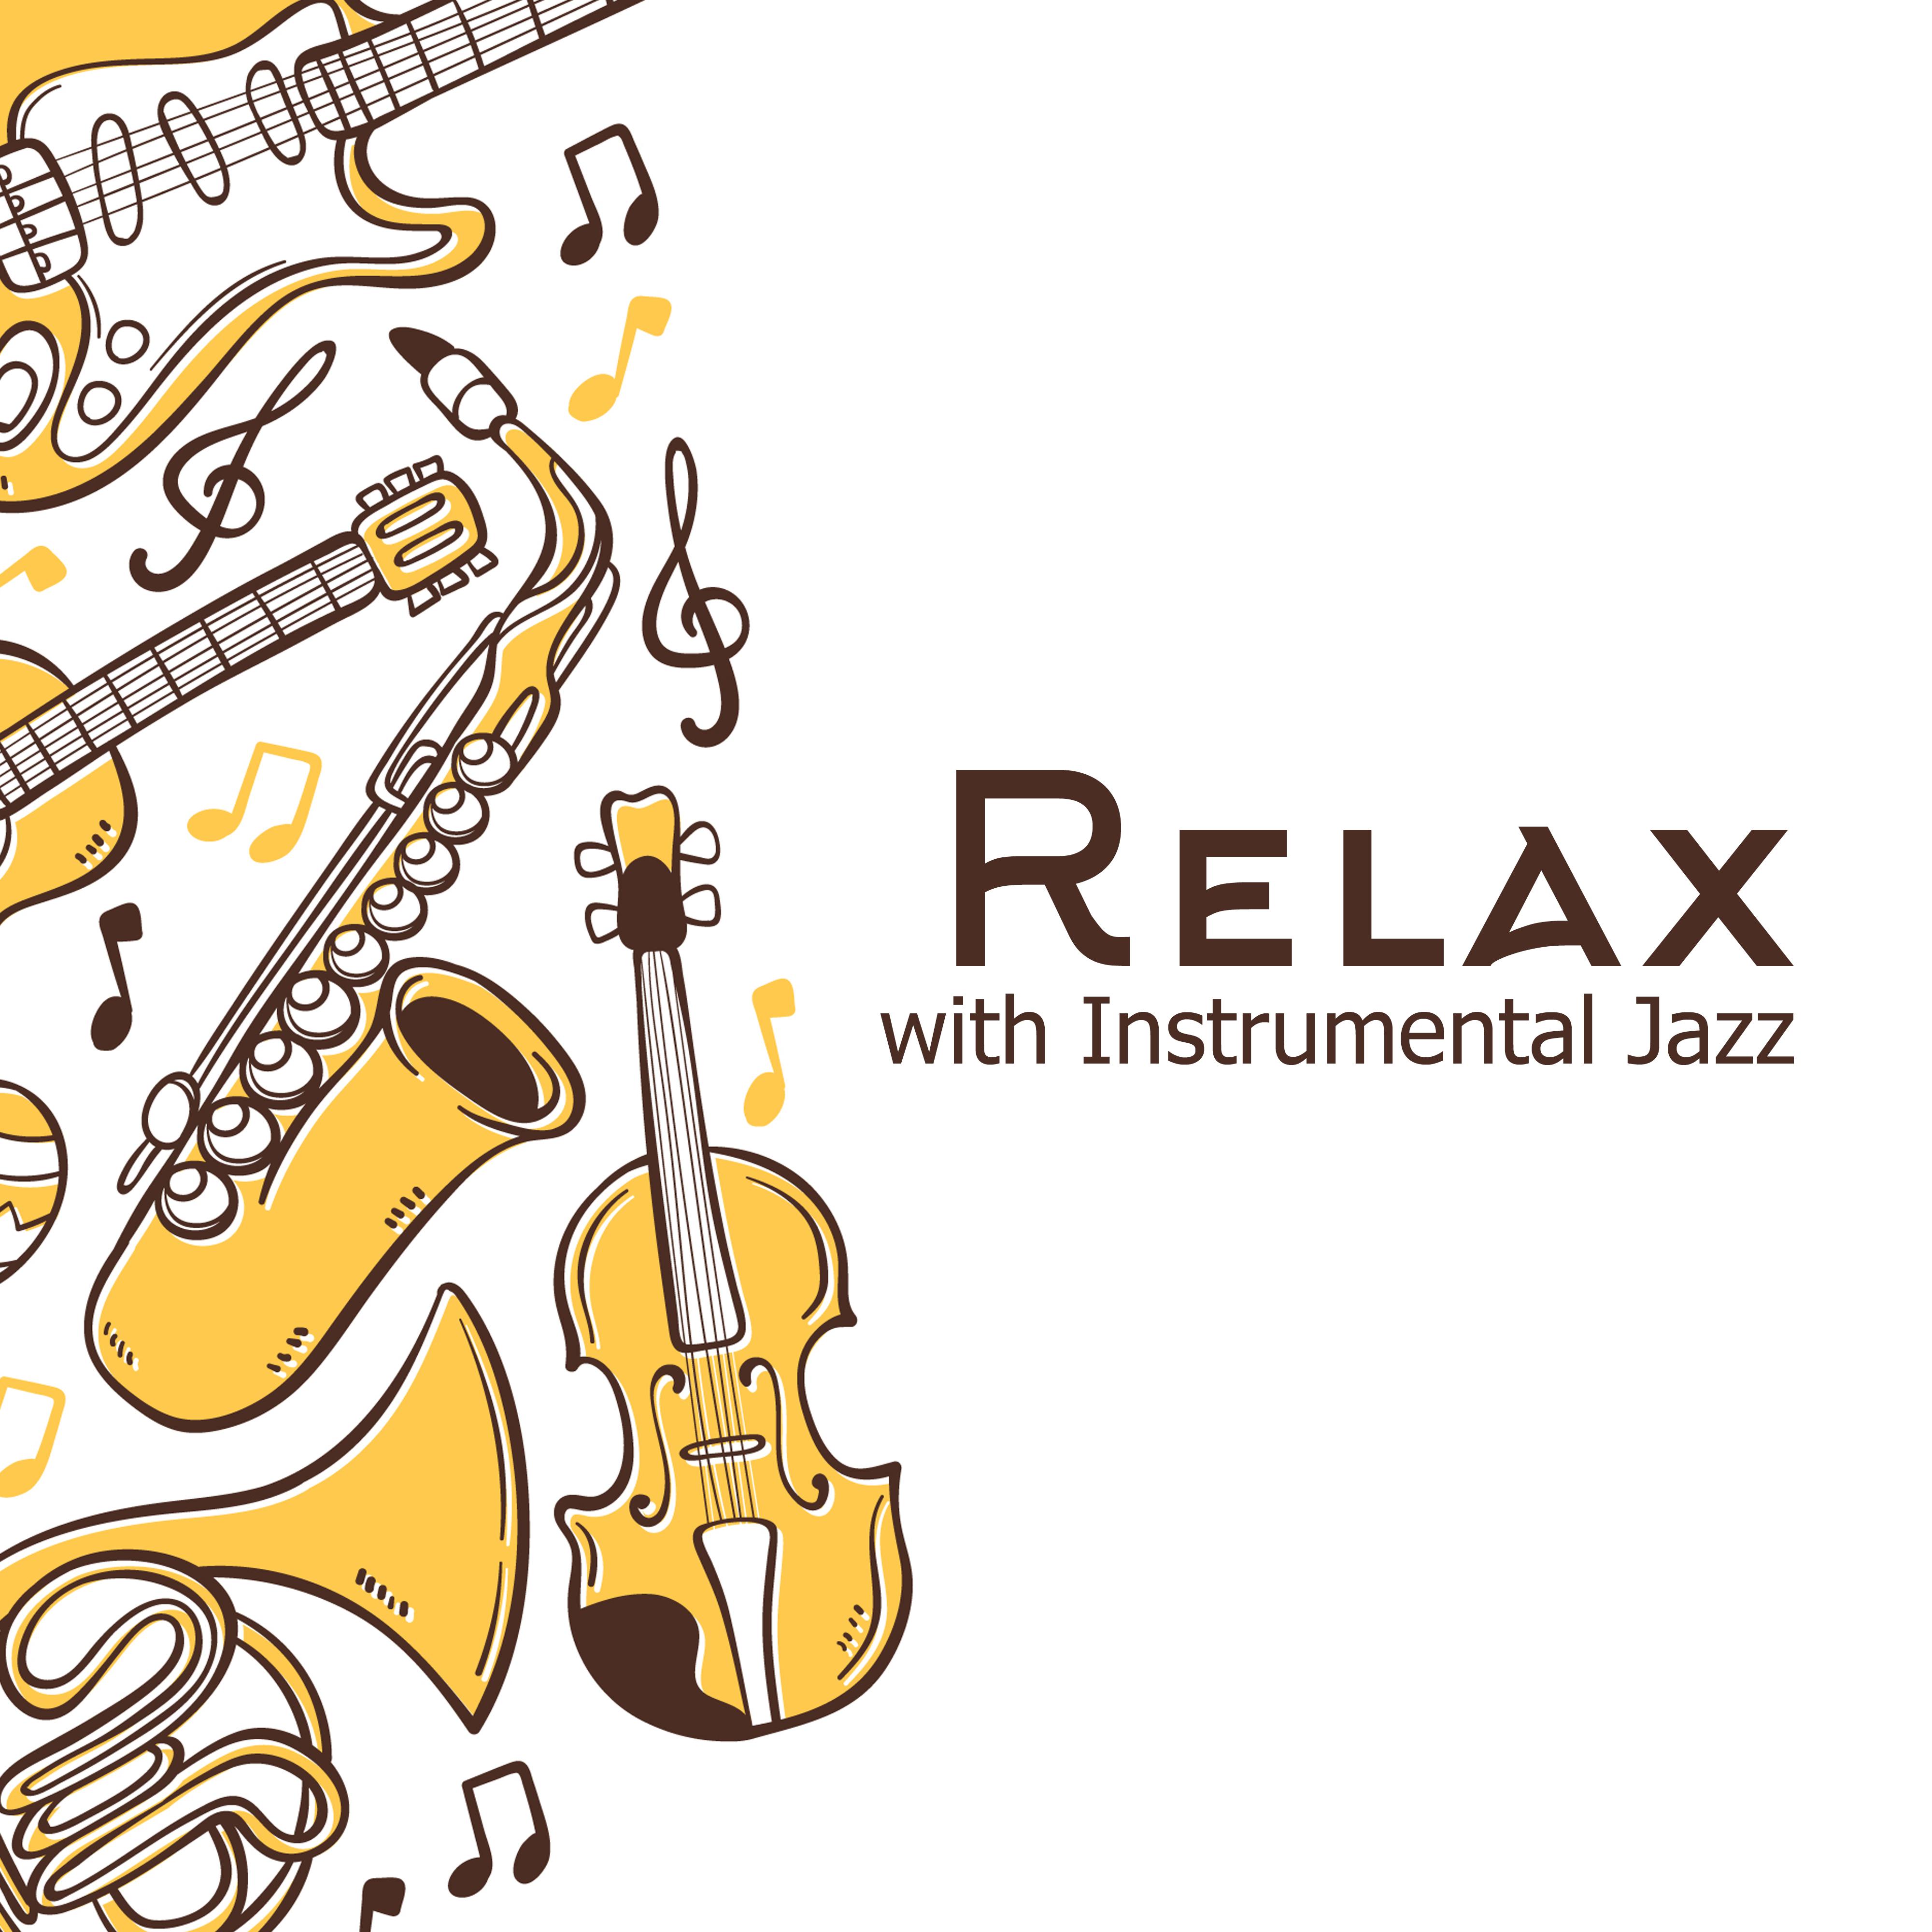 Relax with Instrumental Jazz